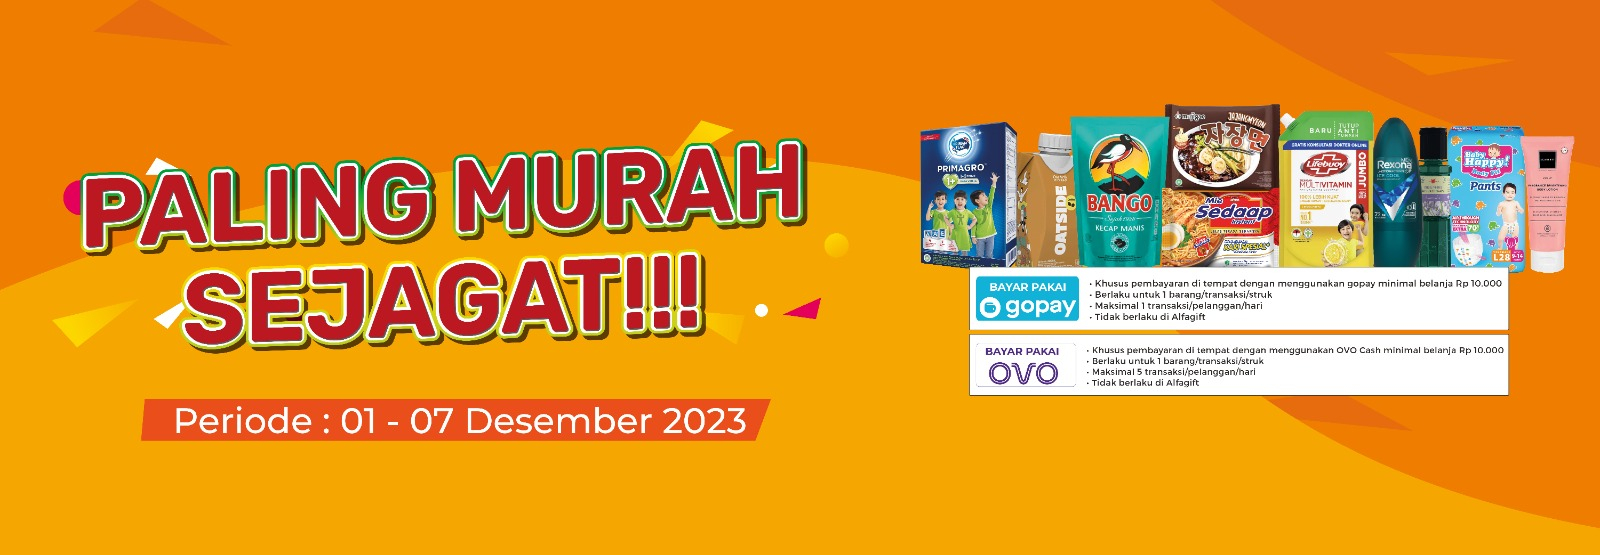 Banner promo PROMO MURAH SEJAGAT Alfamart